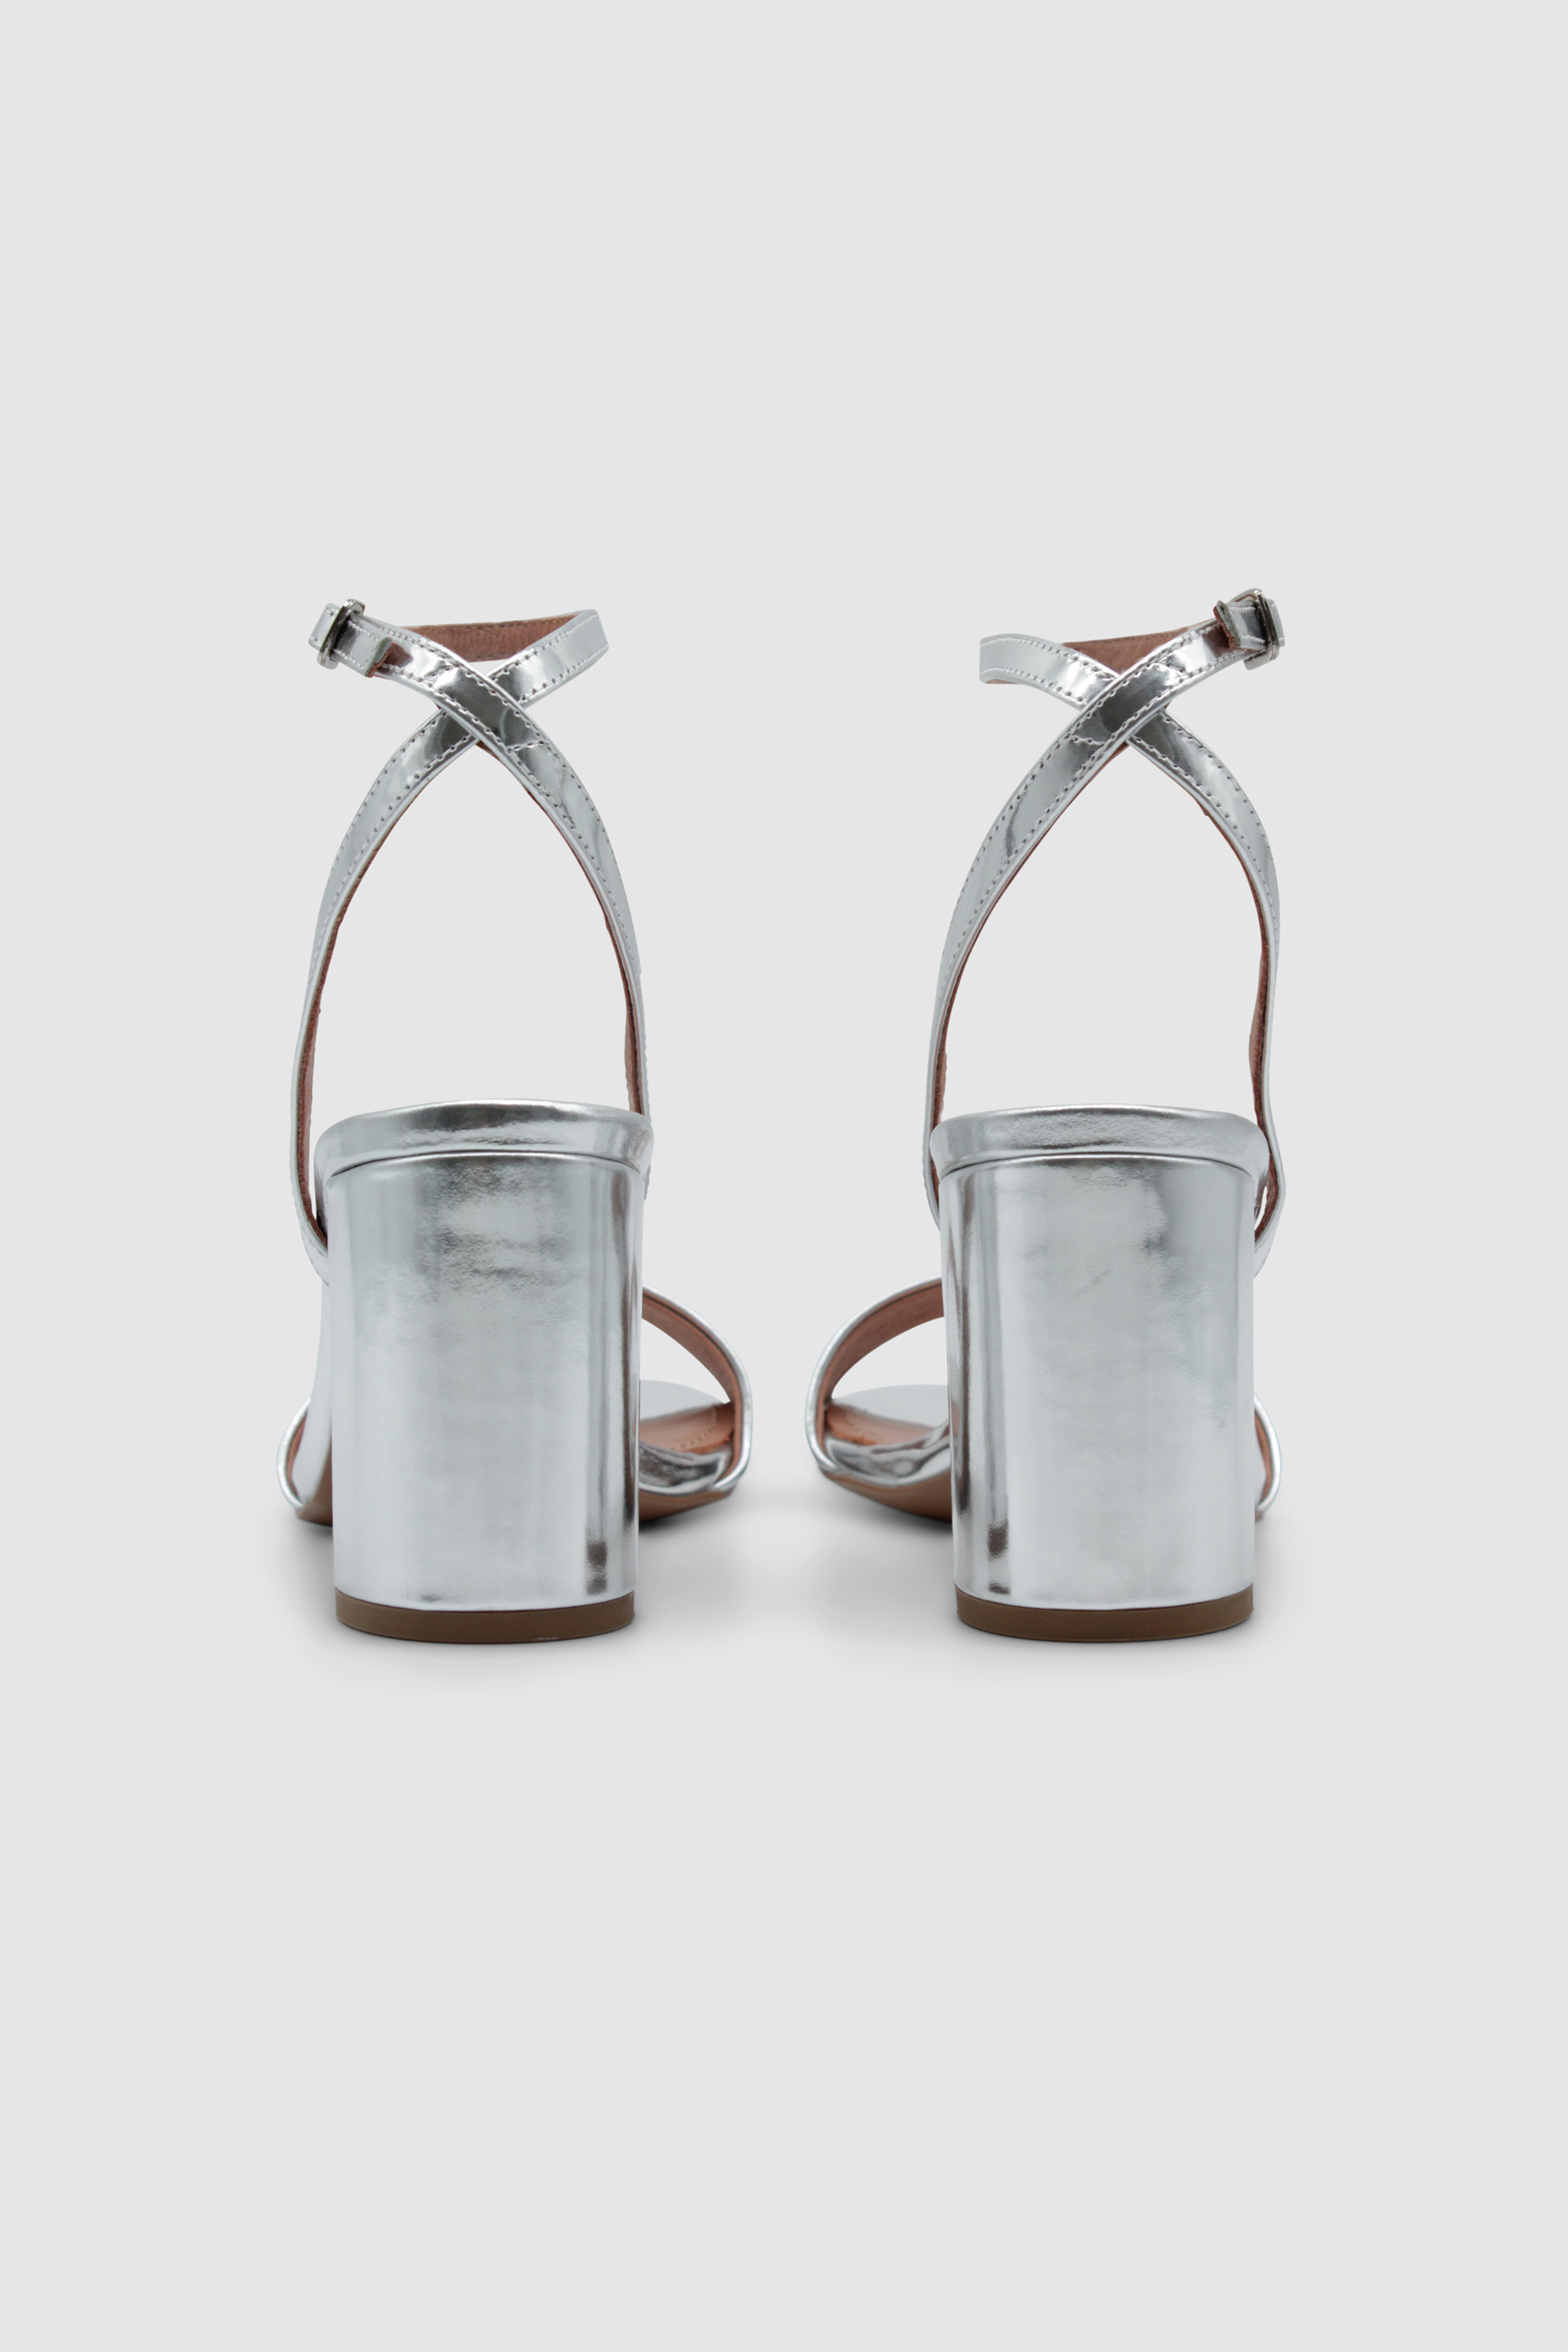 Silberne Sandalen mit einem Fesselriemen, der an der Ferse gekreuzt ist. Mit einem hohen, breiten Absatz. Von der Marke Bibi Lou